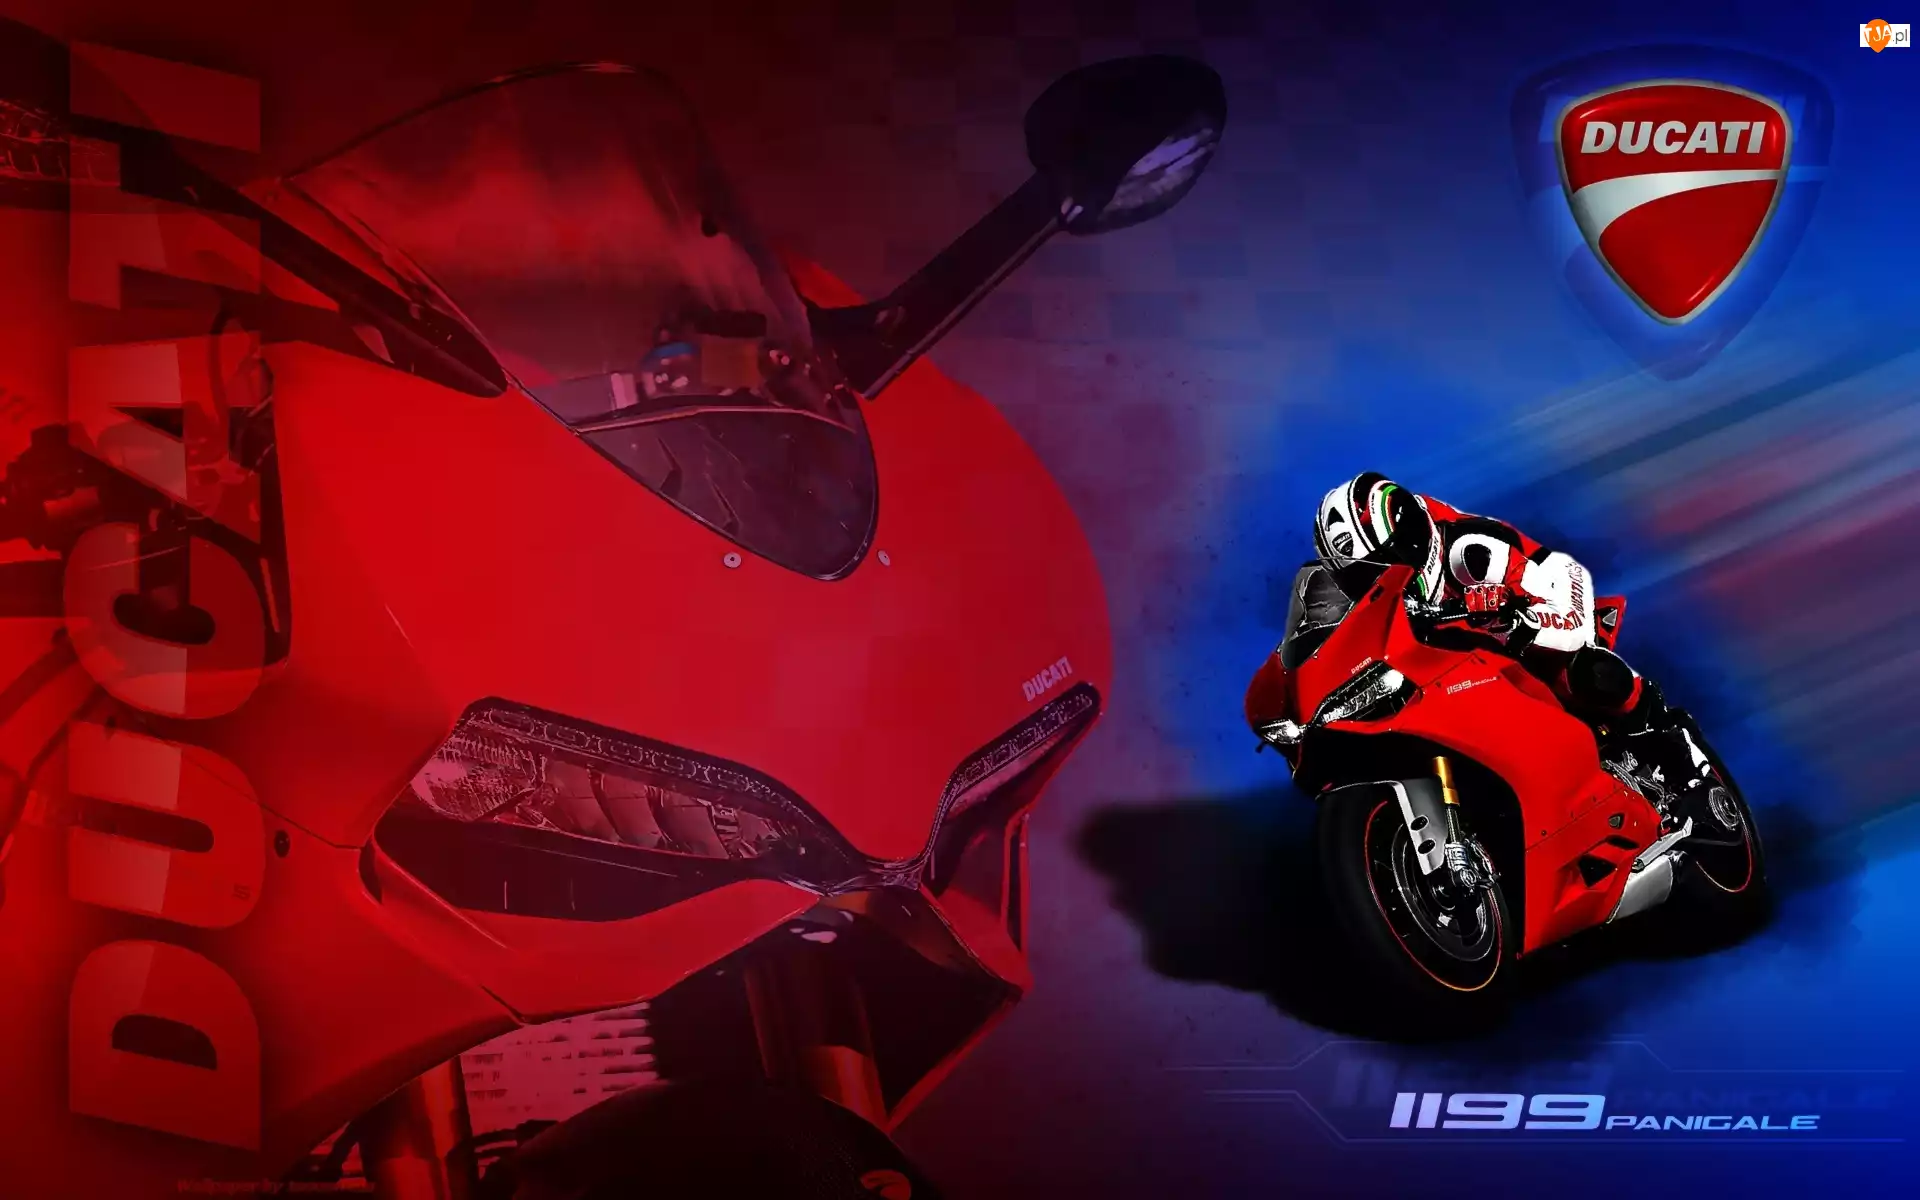 Motocyklista., Ducati 1199 Panigale, Czerwony, Logo